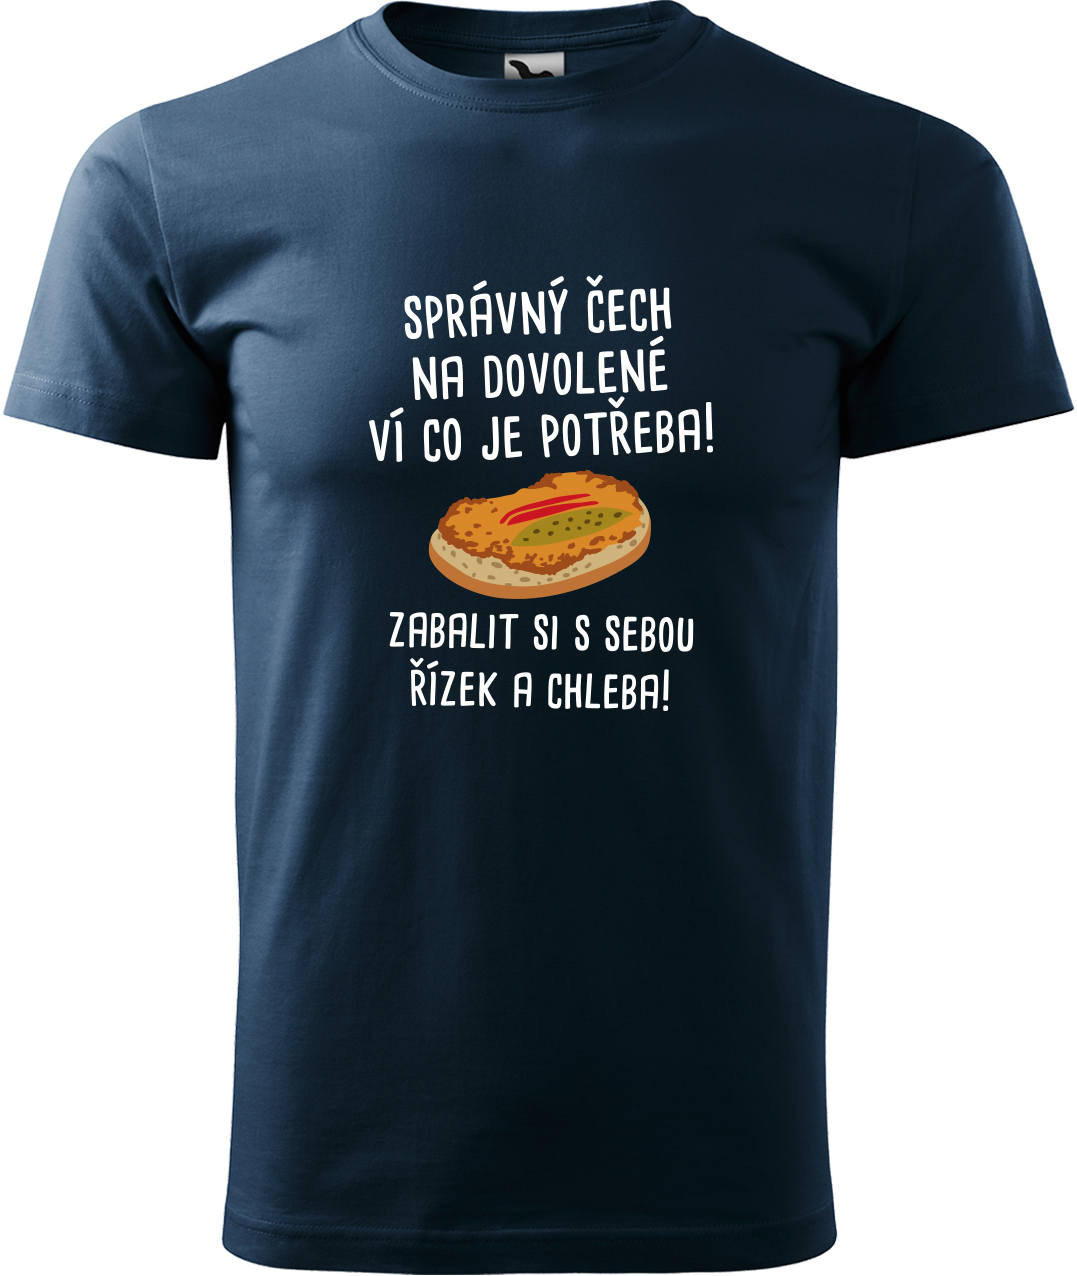 Pánské cestovatelské tričko - Správný Čech na dovolené, ví co je potřeba! Velikost: L, Barva: Námořní modrá (02), Střih: pánský